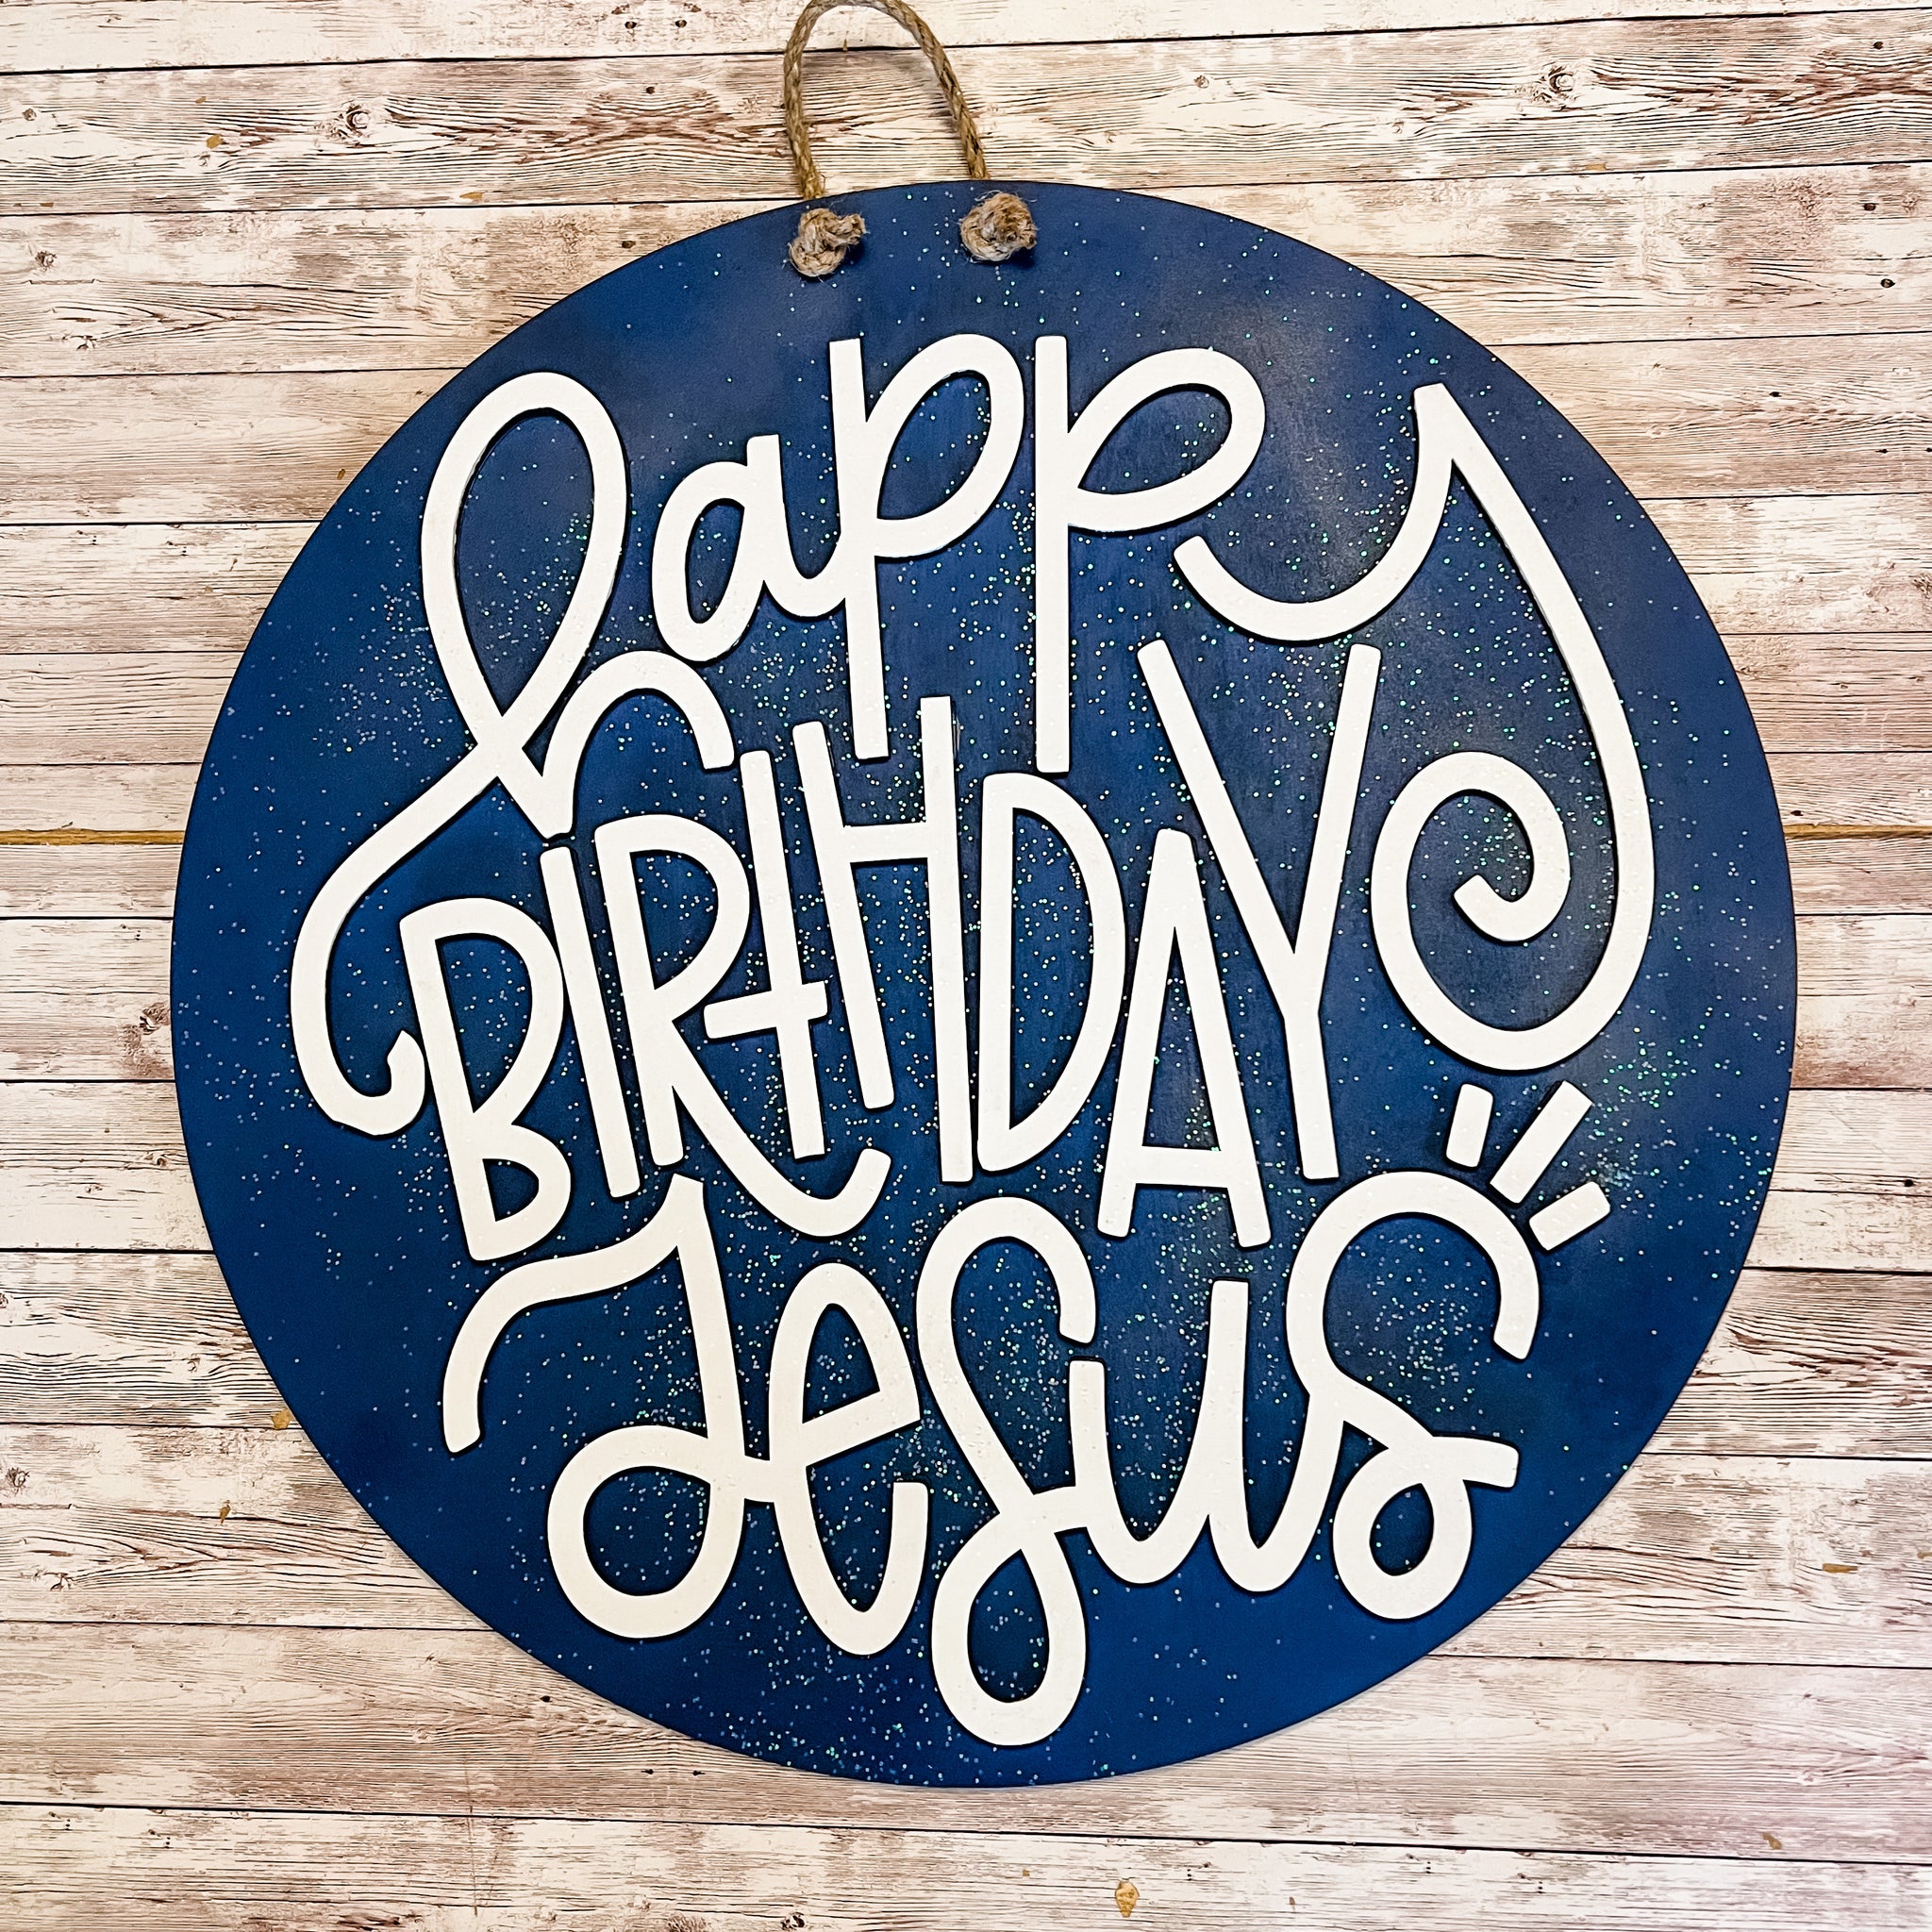 Happy Birthday Jesus door hanger sign